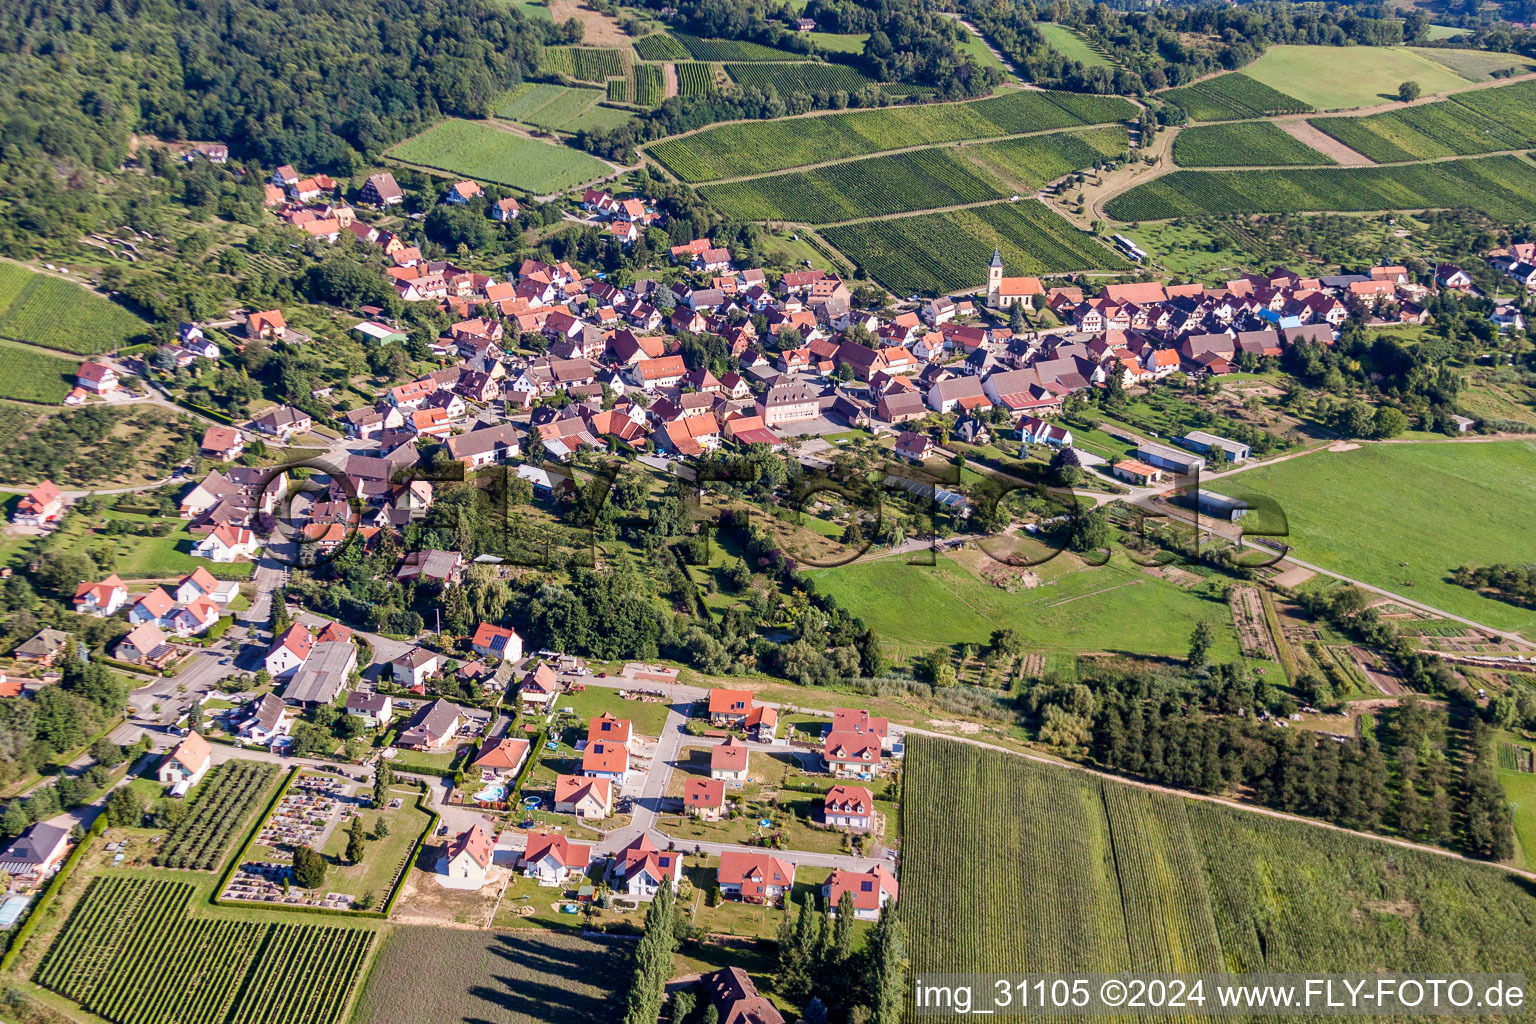 Champs agricoles et surfaces utilisables à Rott dans le département Bas Rhin, France d'en haut